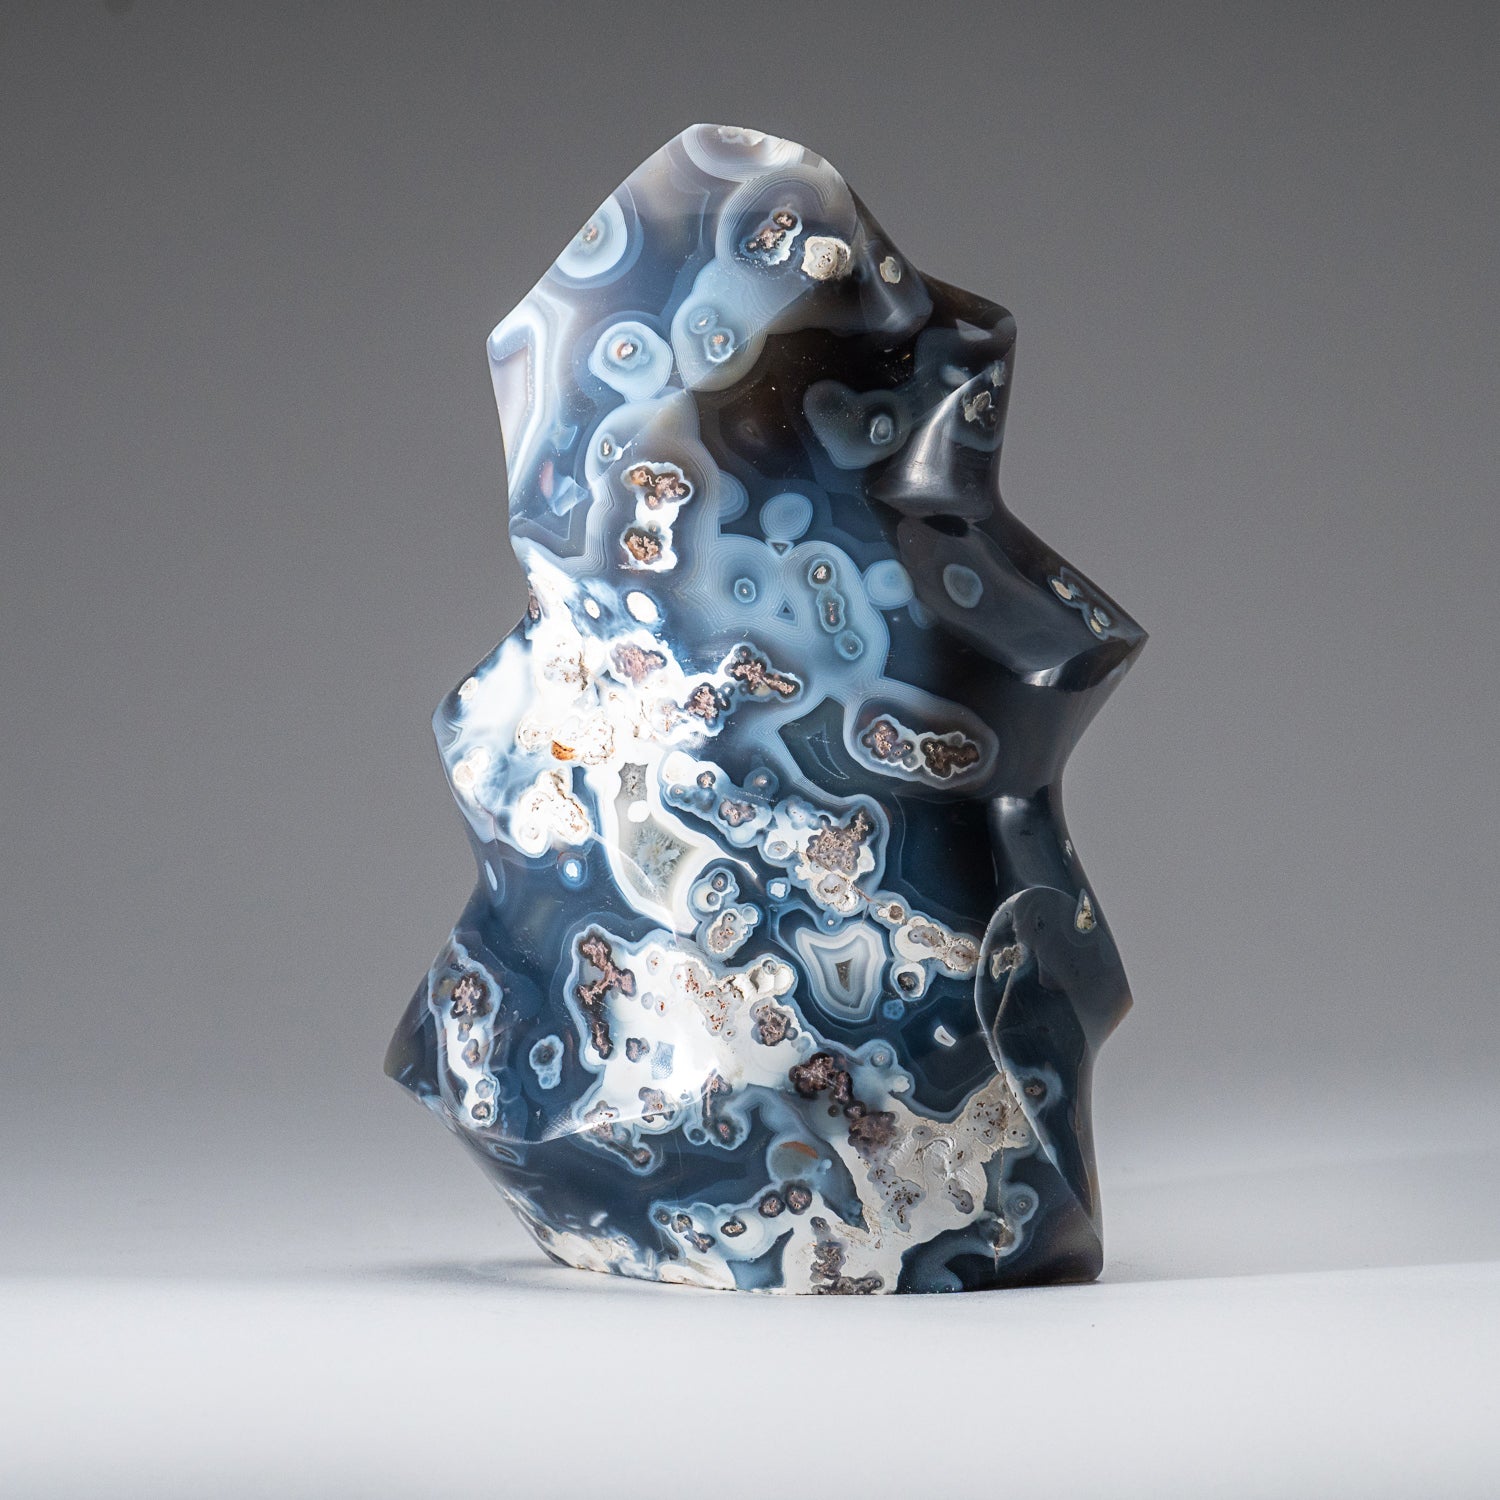 Genuine Polished Blue Chalcedony Orca Stone Flame Freeform (2.3 lbs)